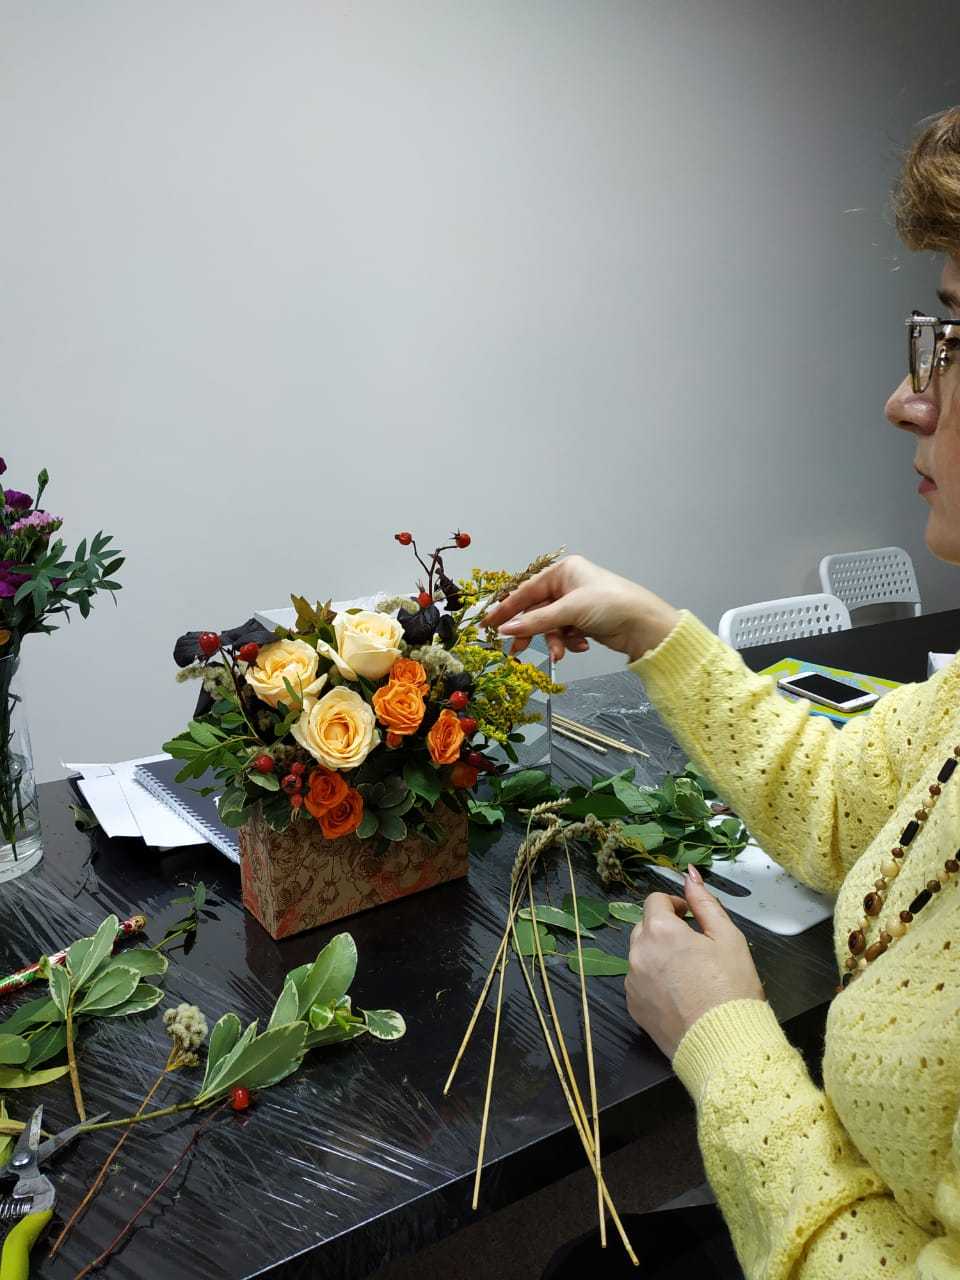 Мастер-класс по бумагопластике для начинающих на примере создания букета из весенних крокусов и розы для детского творчества